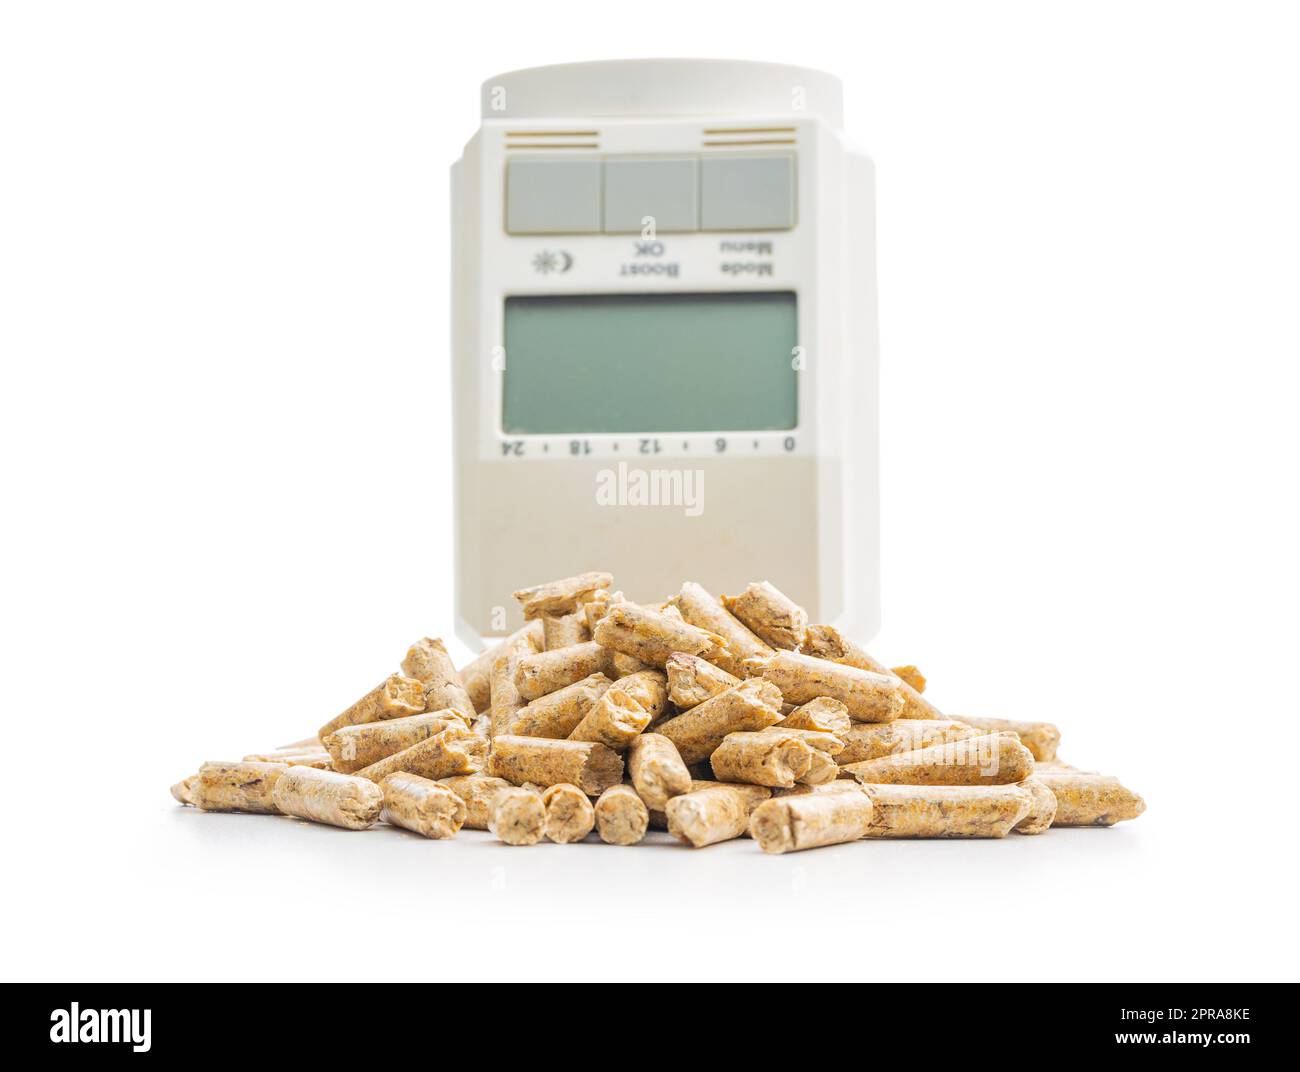 Holzpellets und thermostatischer Ventilkopf isoliert auf weißem Hintergrund. Biomasse – Erneuerbare Wärmequelle. Stockfoto